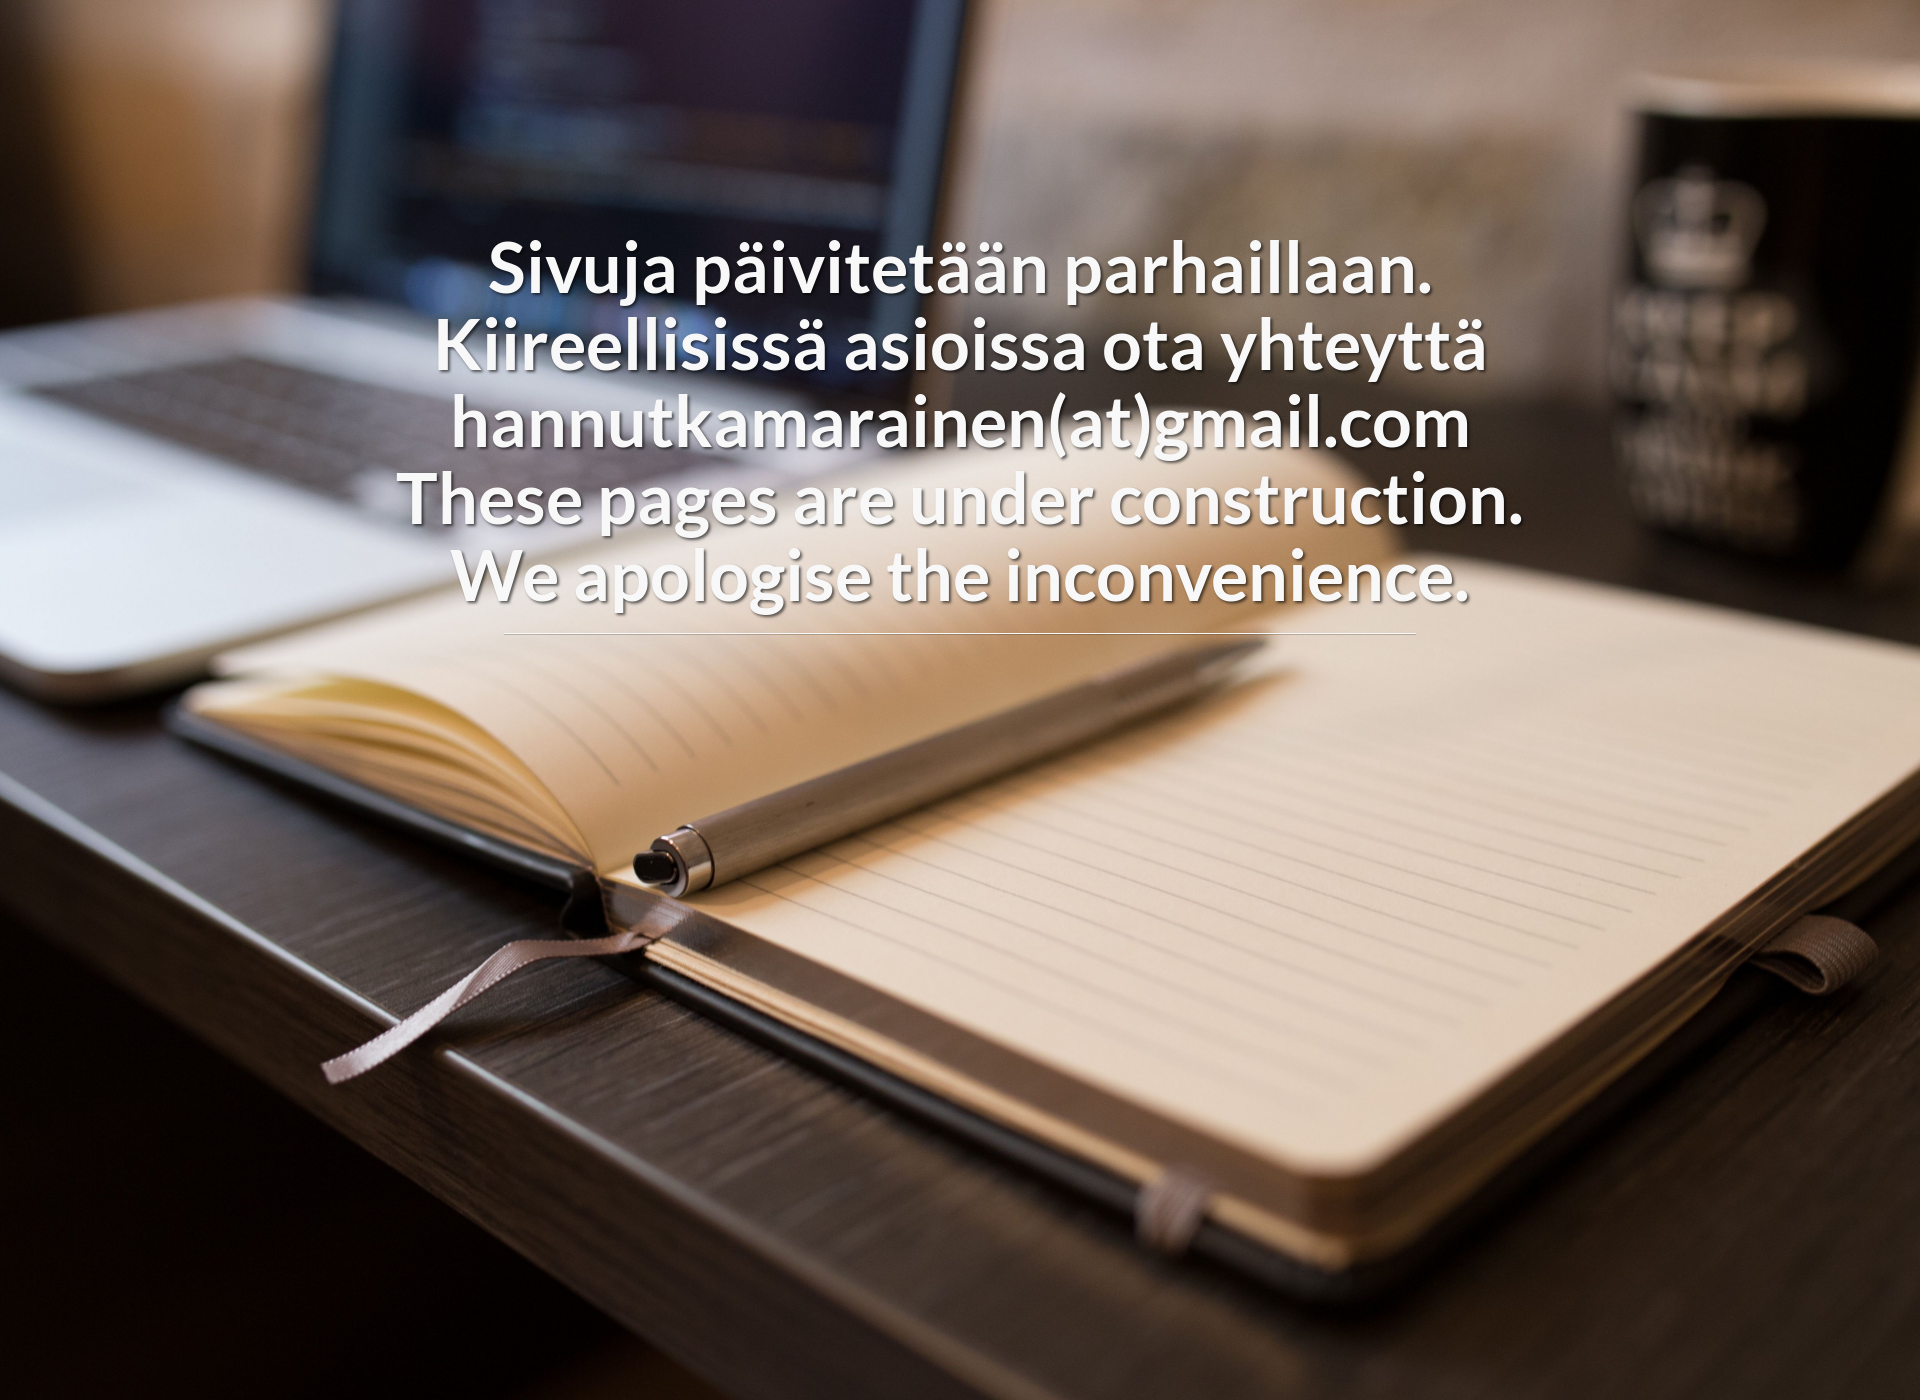 Screenshot for savokarjalanluomu.fi